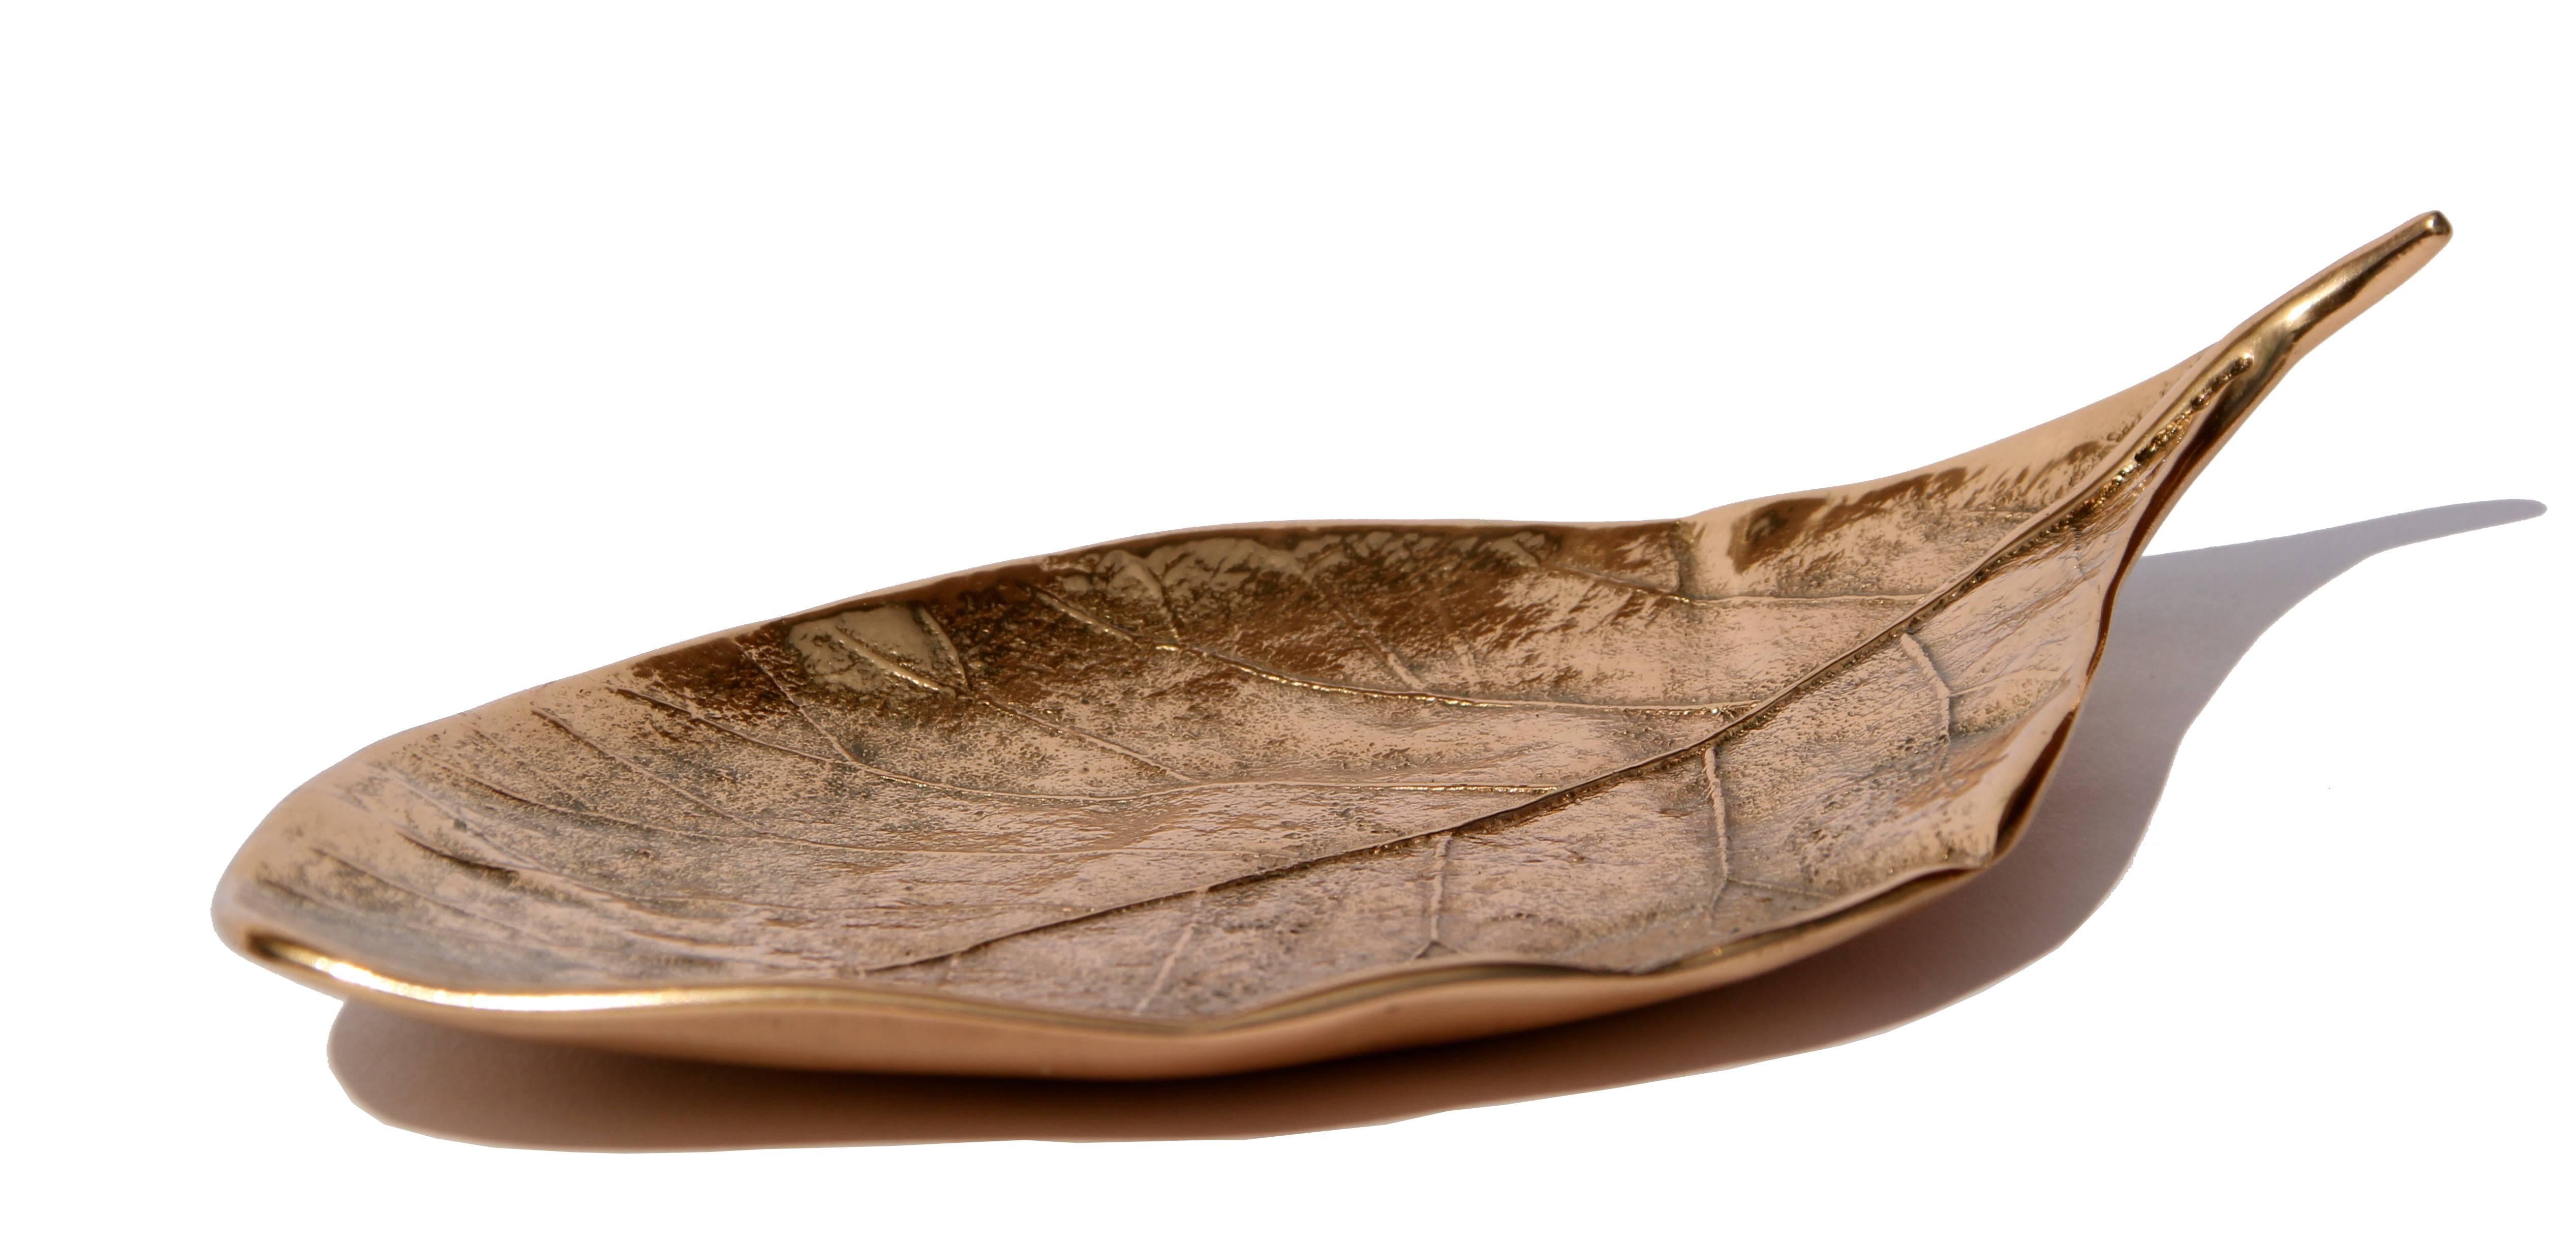 Jedes dieser prächtigen Bronzeblätter wird einzeln und mit unglaublichen Details von Hand gefertigt. Sie werden mit traditionellen Techniken gegossen und poliert:: um die raue Oberfläche dieses edlen Materials zu erhalten und jede Maserung und jedes